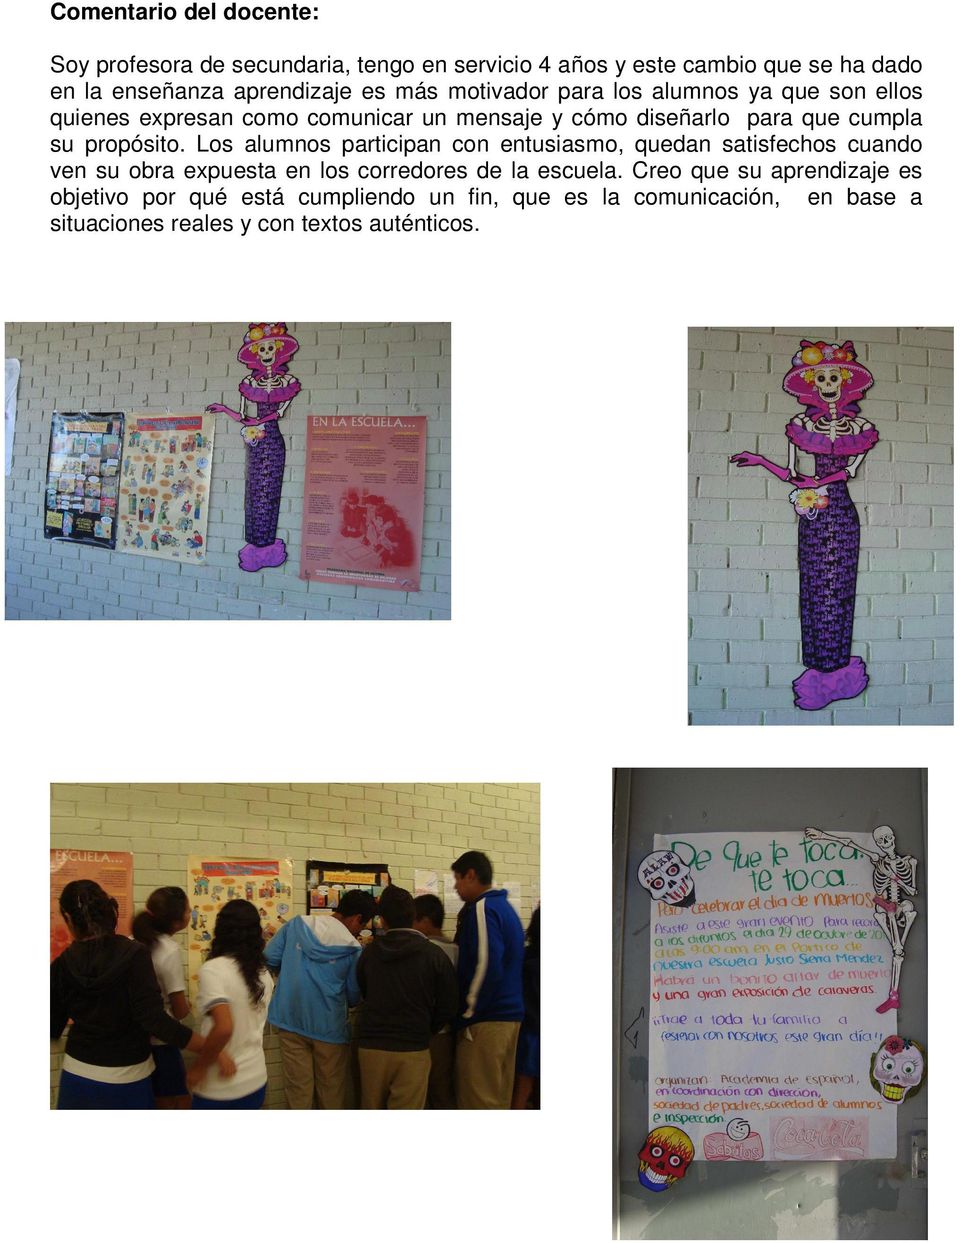 propósito. Los alumnos participan con entusiasmo, quedan satisfechos cuando ven su obra expuesta en los corredores de la escuela.